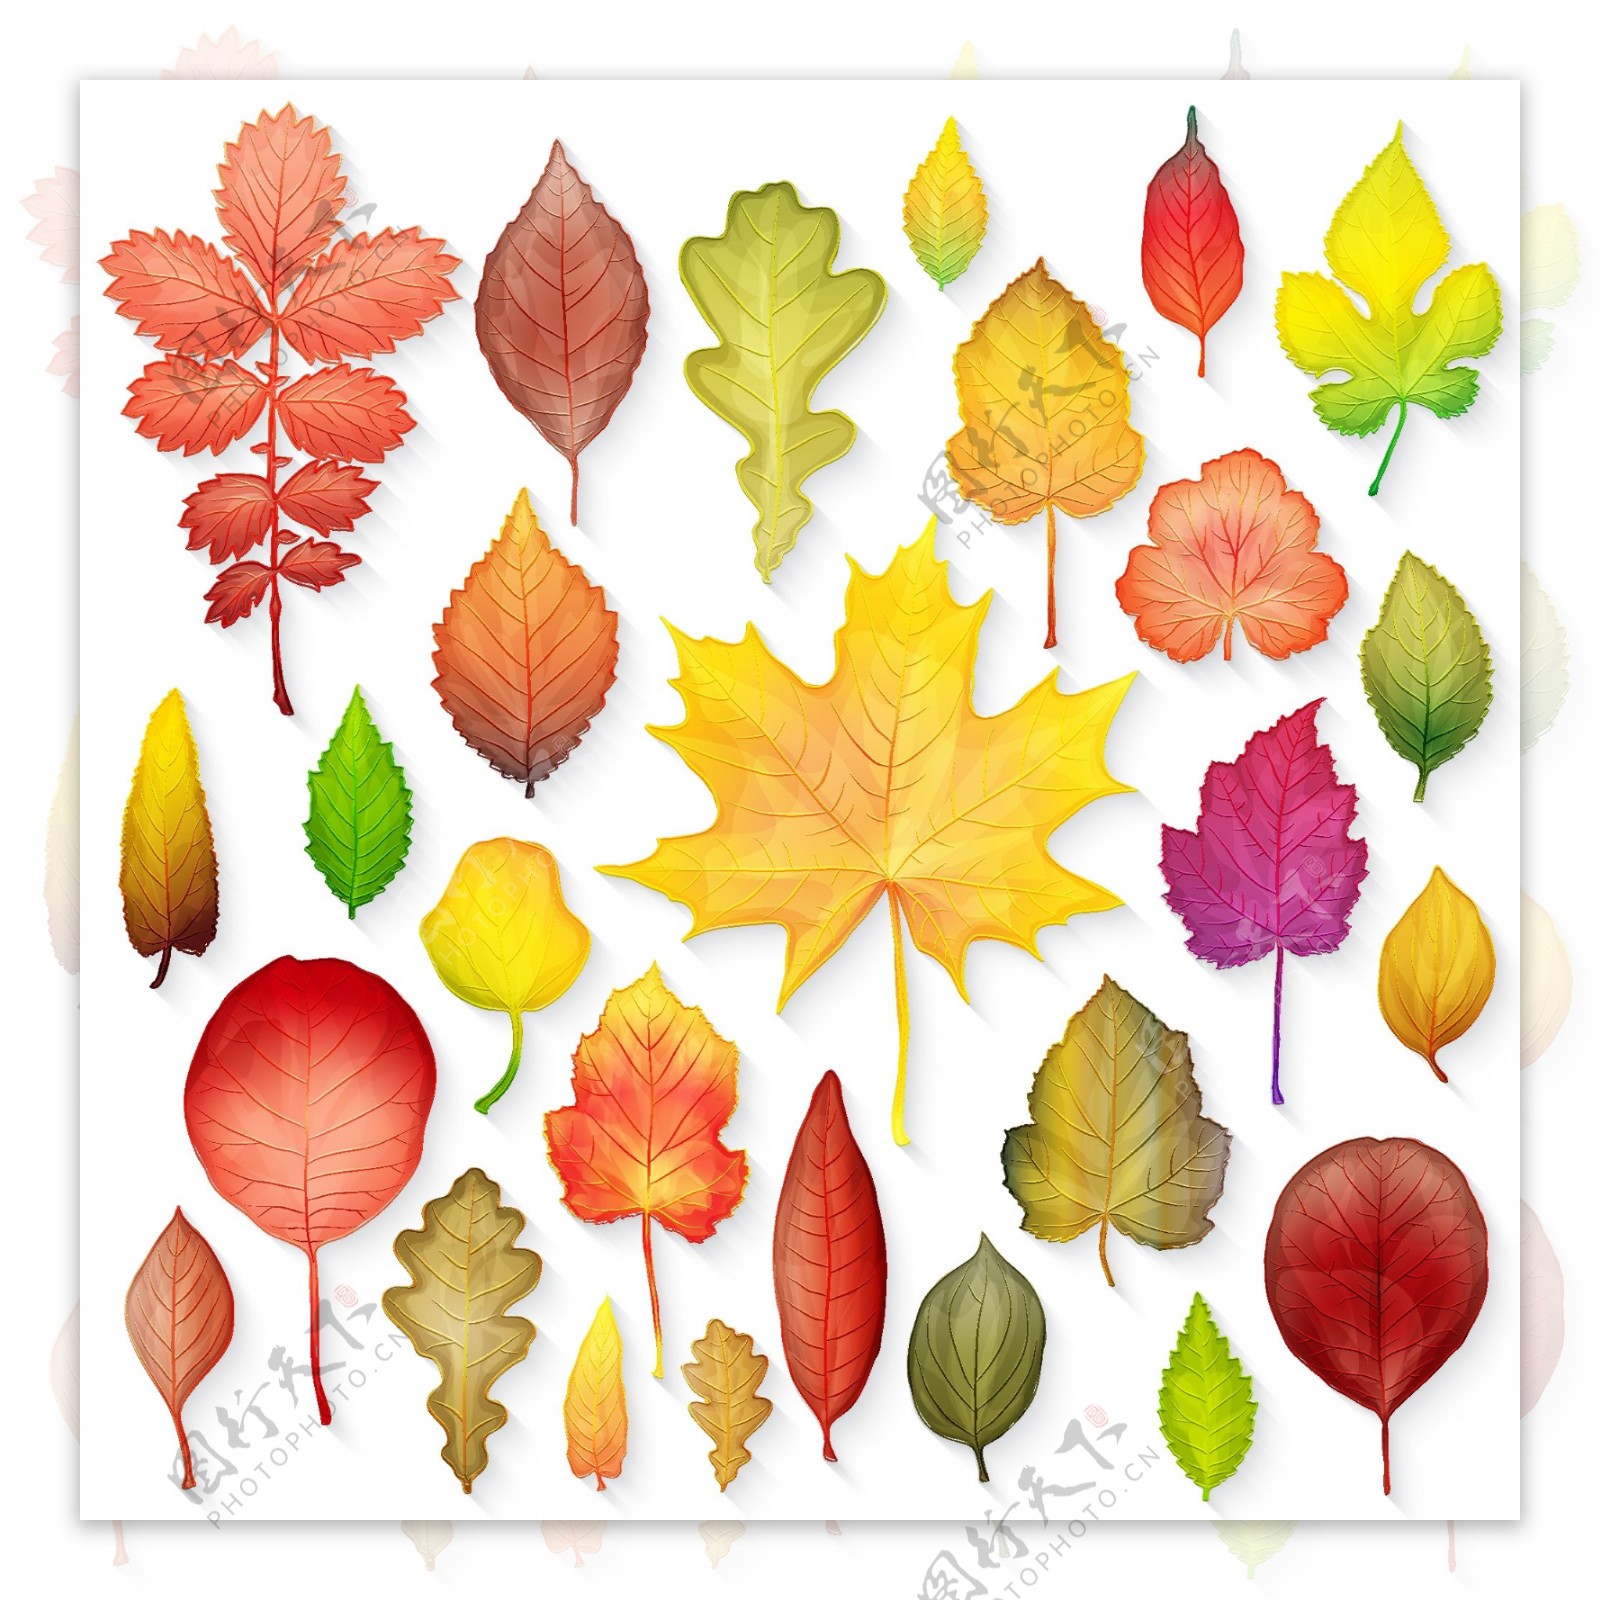 水彩绘各种叶子插画